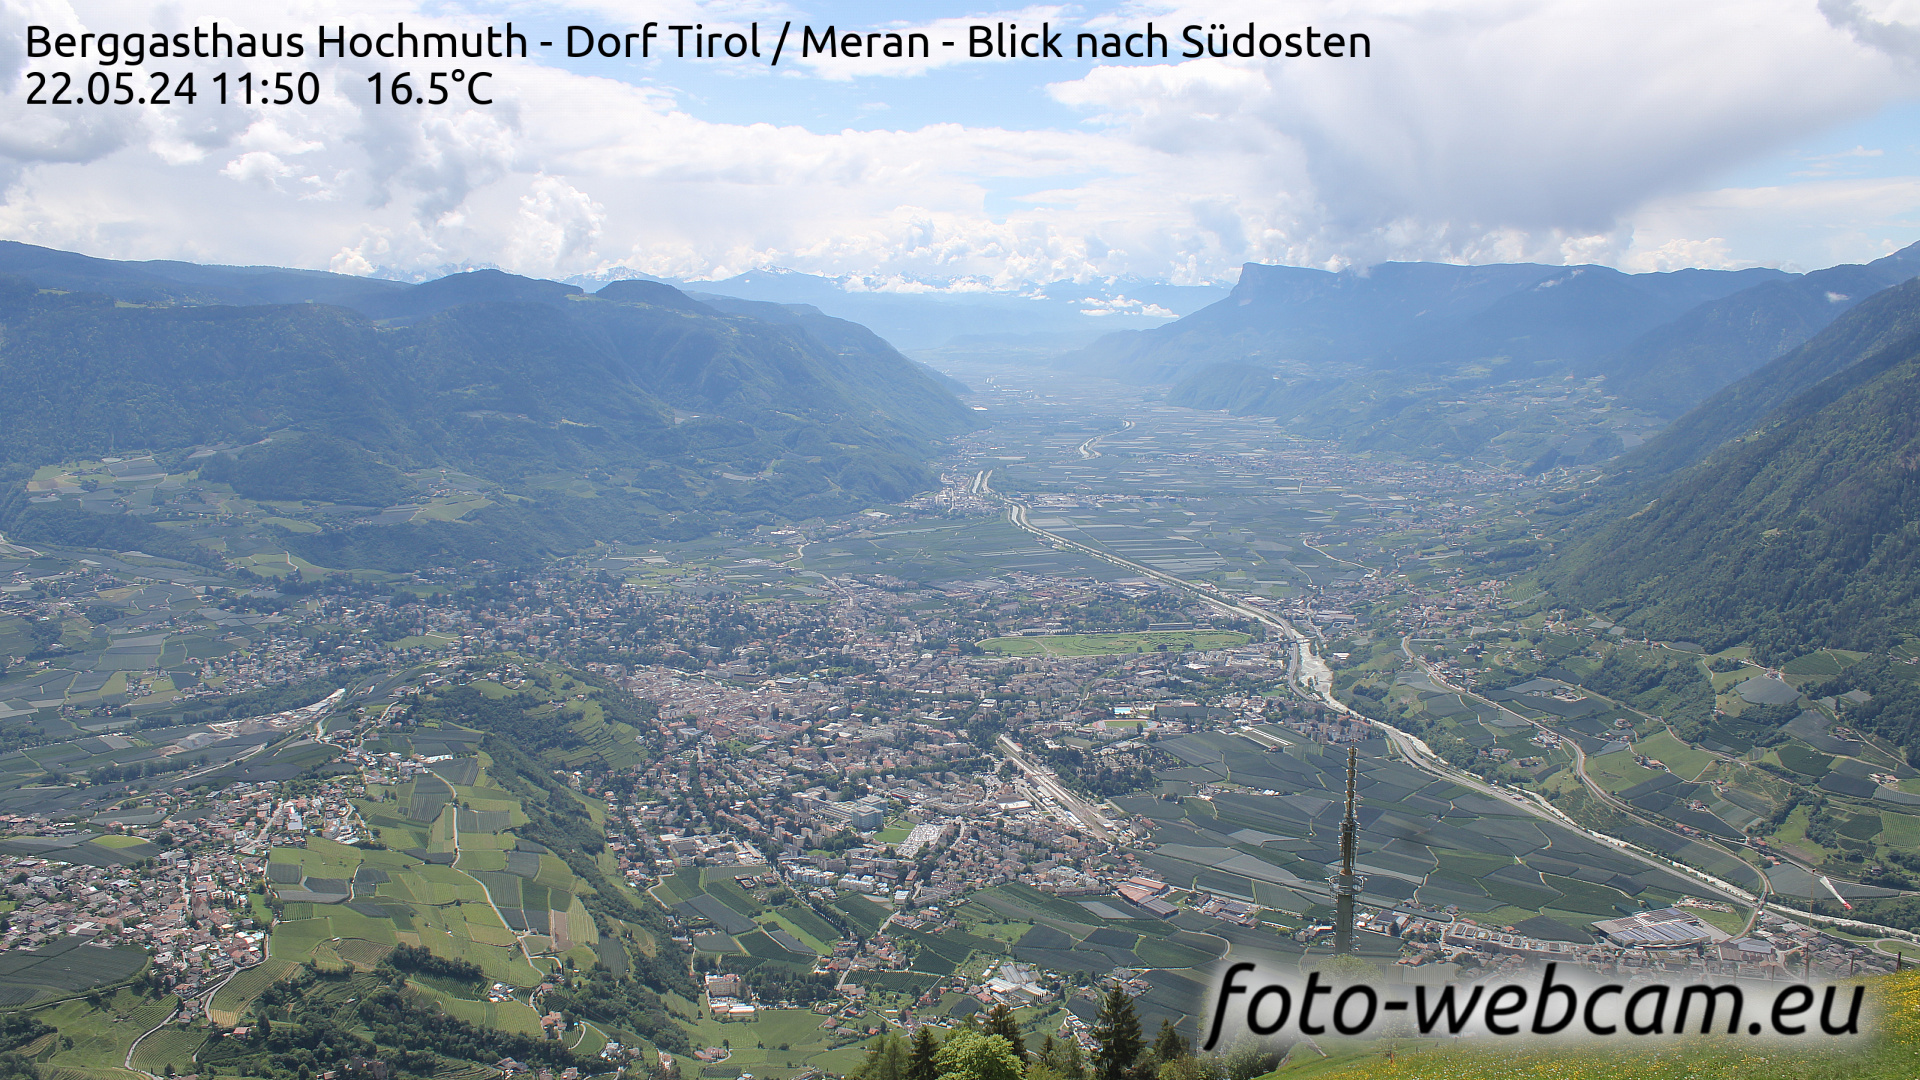 Dorf Tirol Tir. 11:56